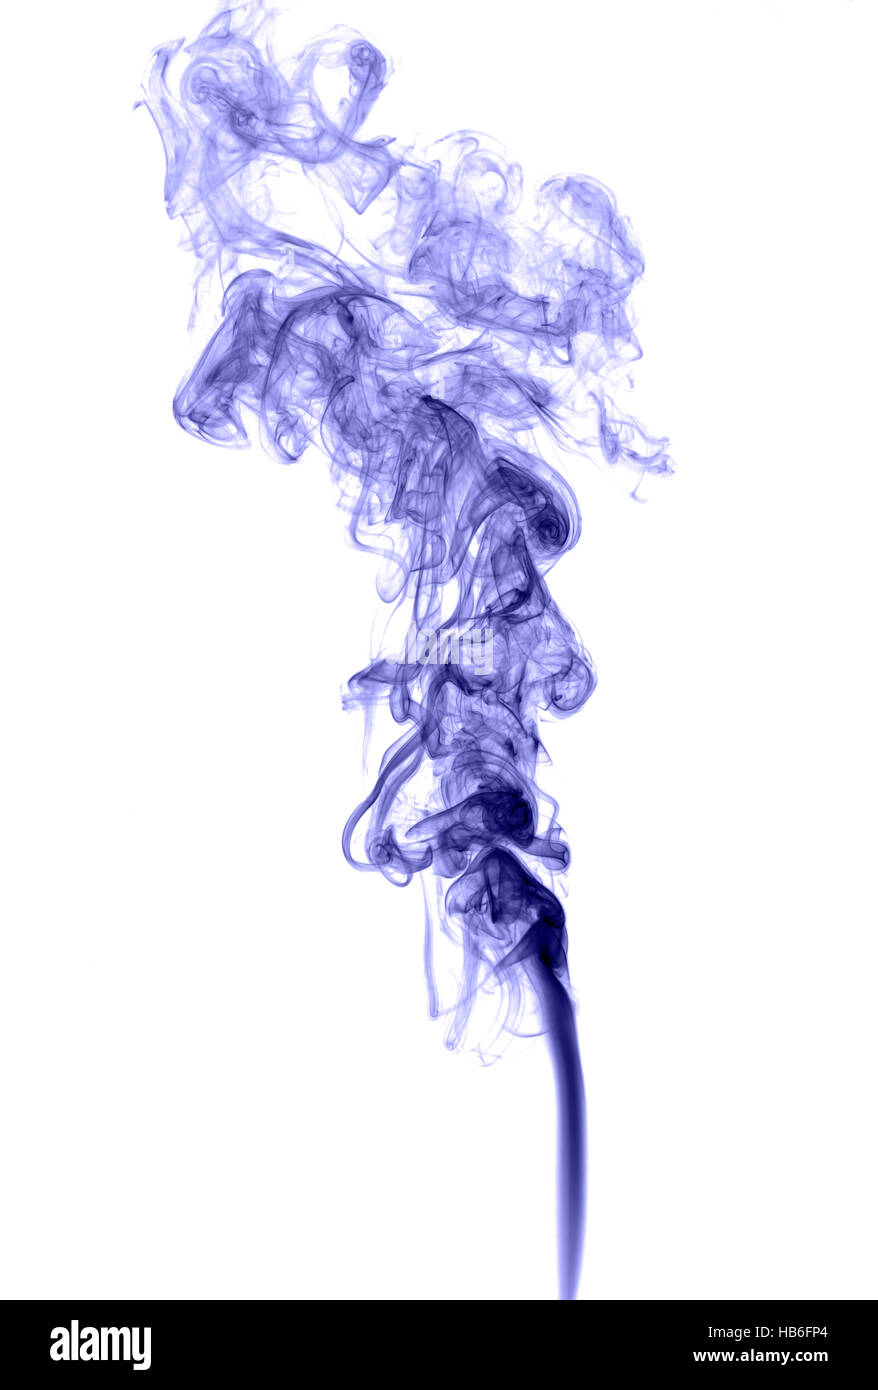 Abstrakt farbigen Rauch auf hellem Hintergrund Stockfoto